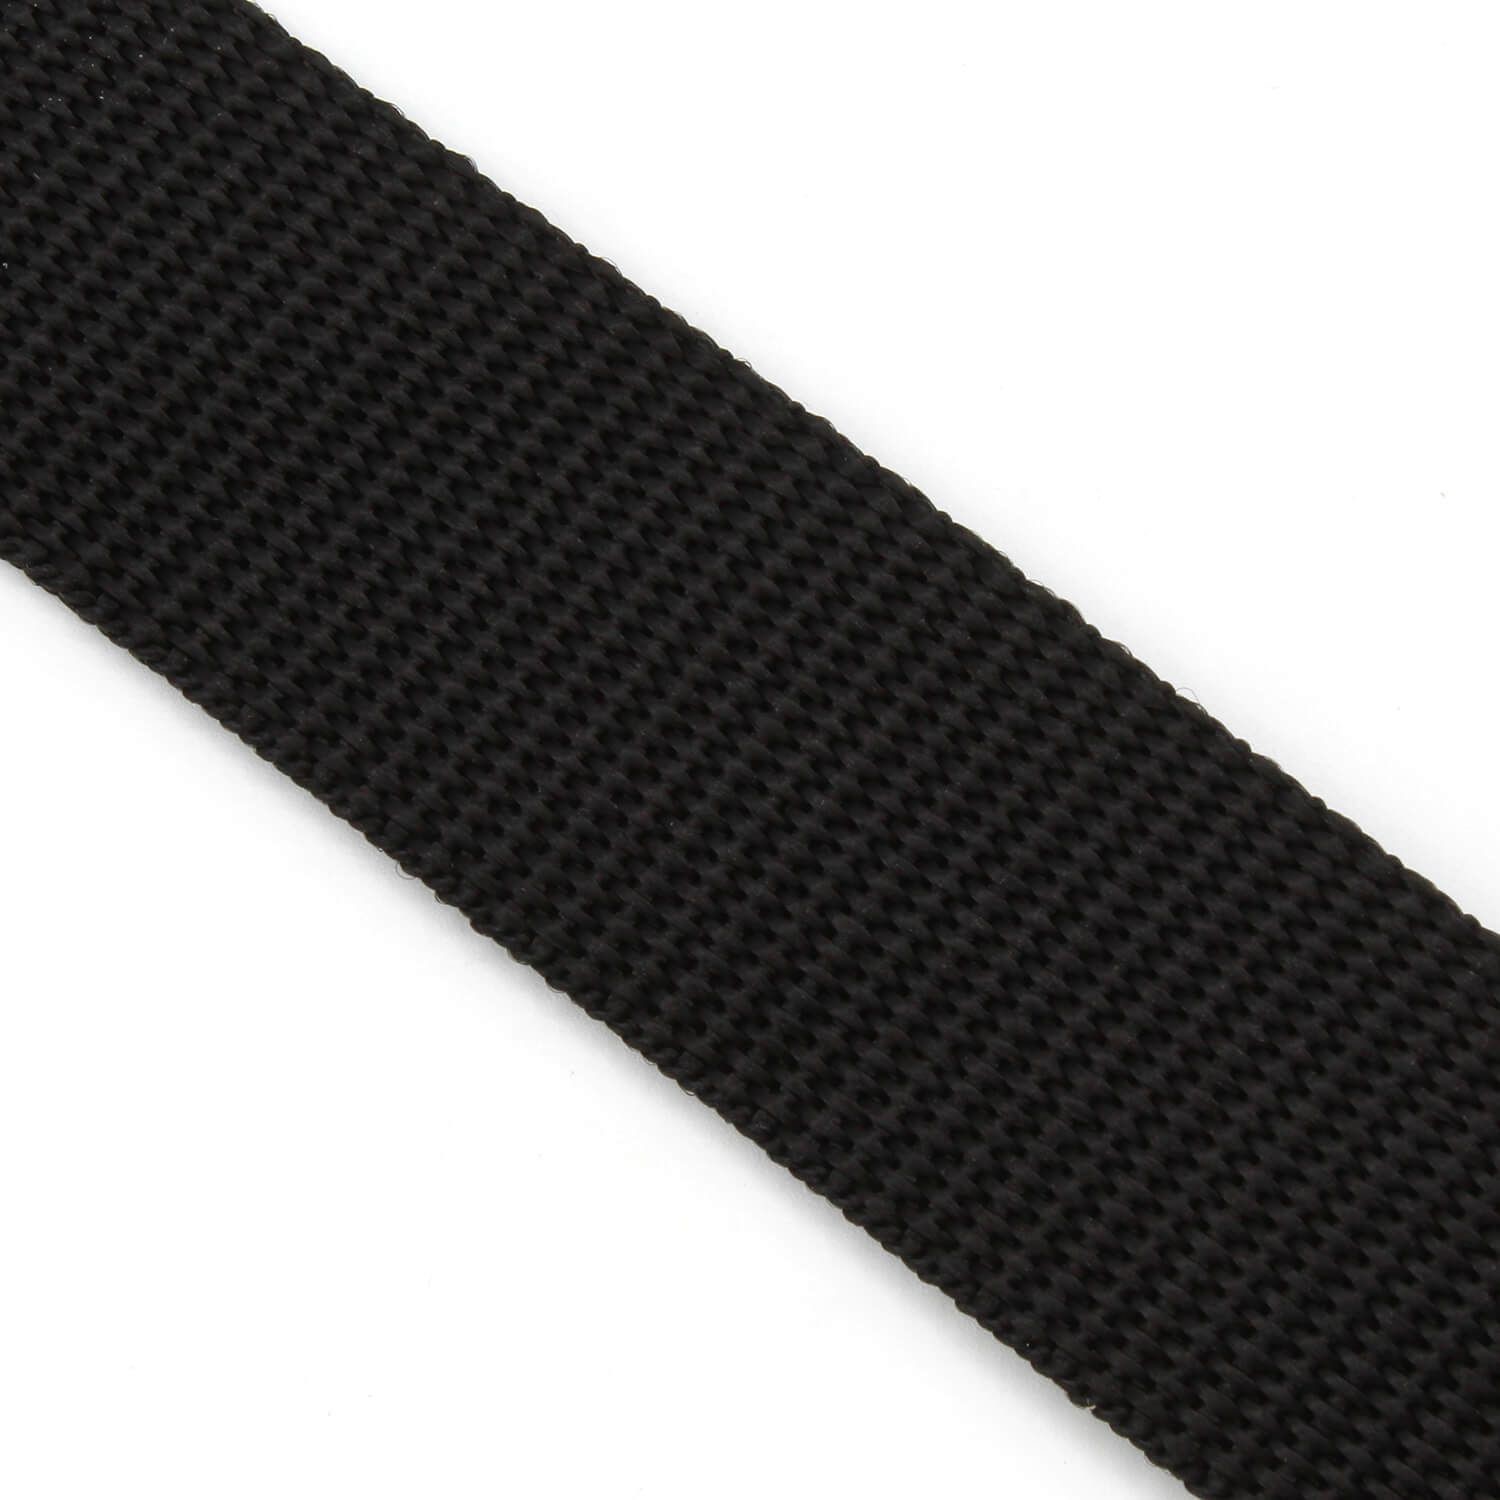 Gurtband 30mm breit, 1,6mm stark PP Polypropylen Schwarz B-WARE Reißfestigkeit: 280kg (10 Meter) Made in Germany